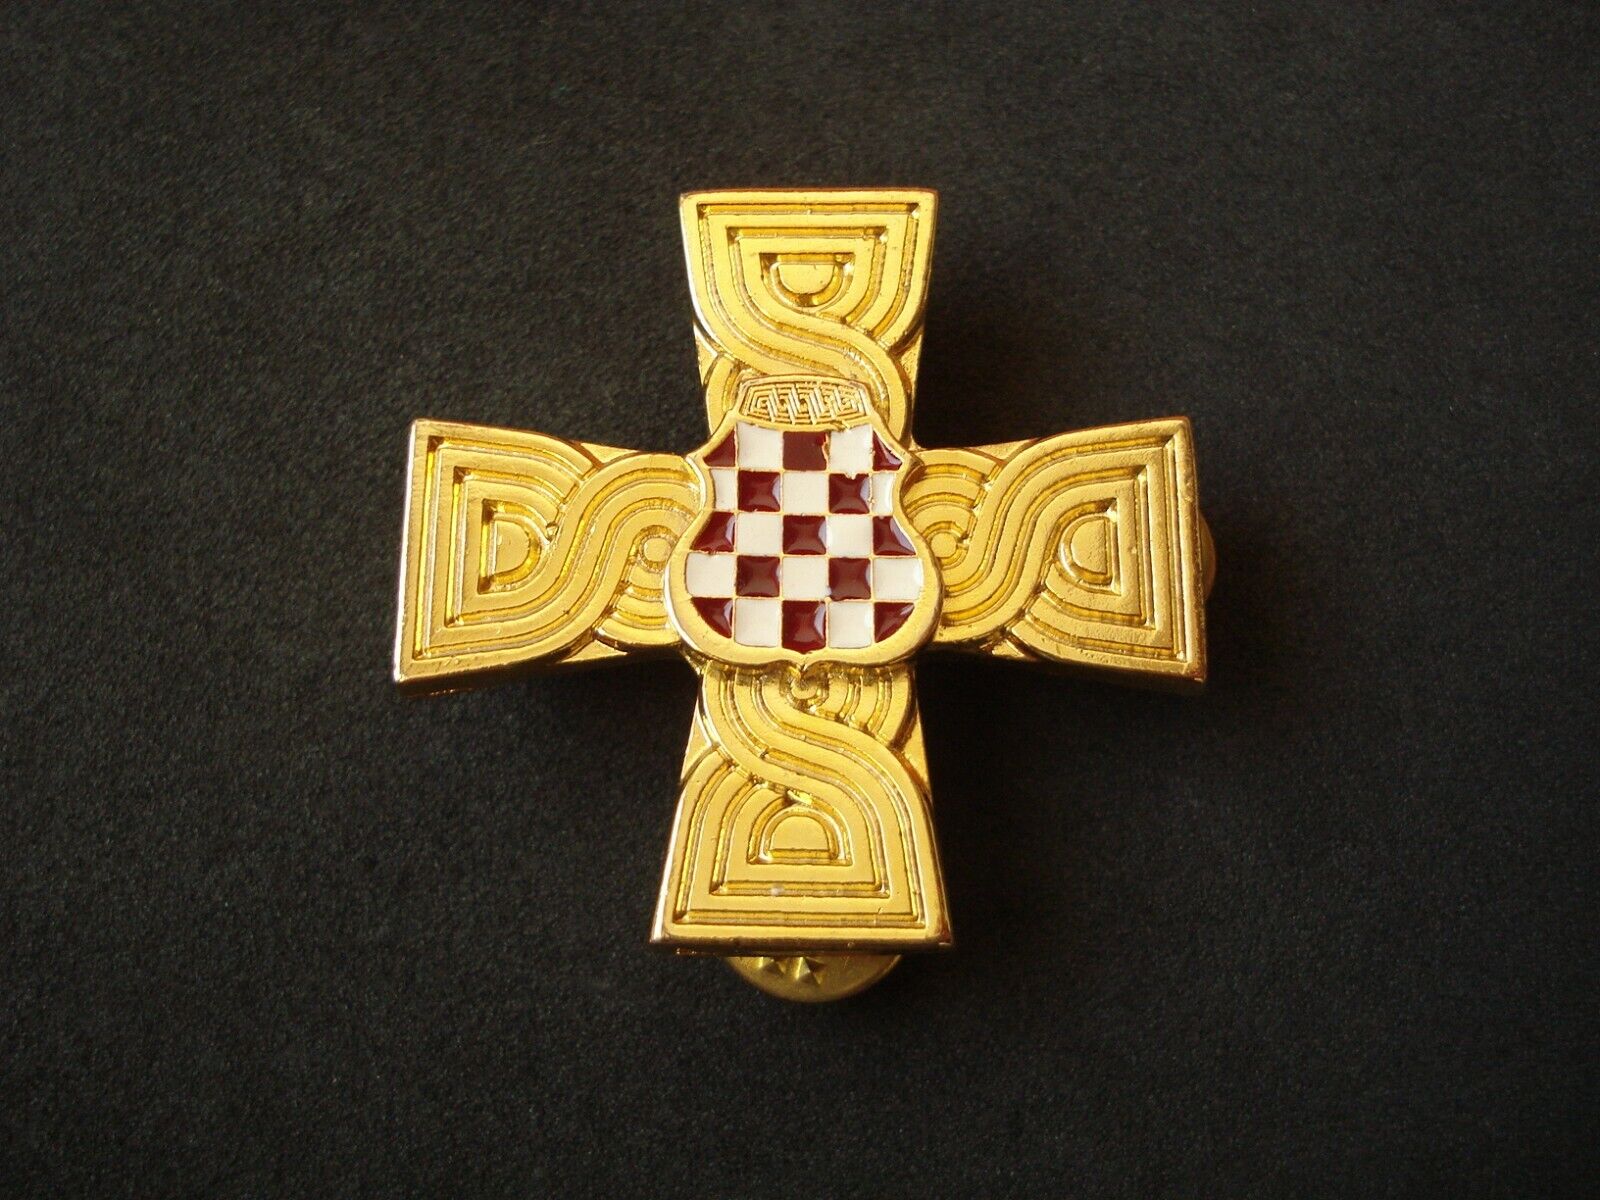 Croatia - Bosnia army, HVO, War Memorial Cross, 1992 - 1995, numbered; military